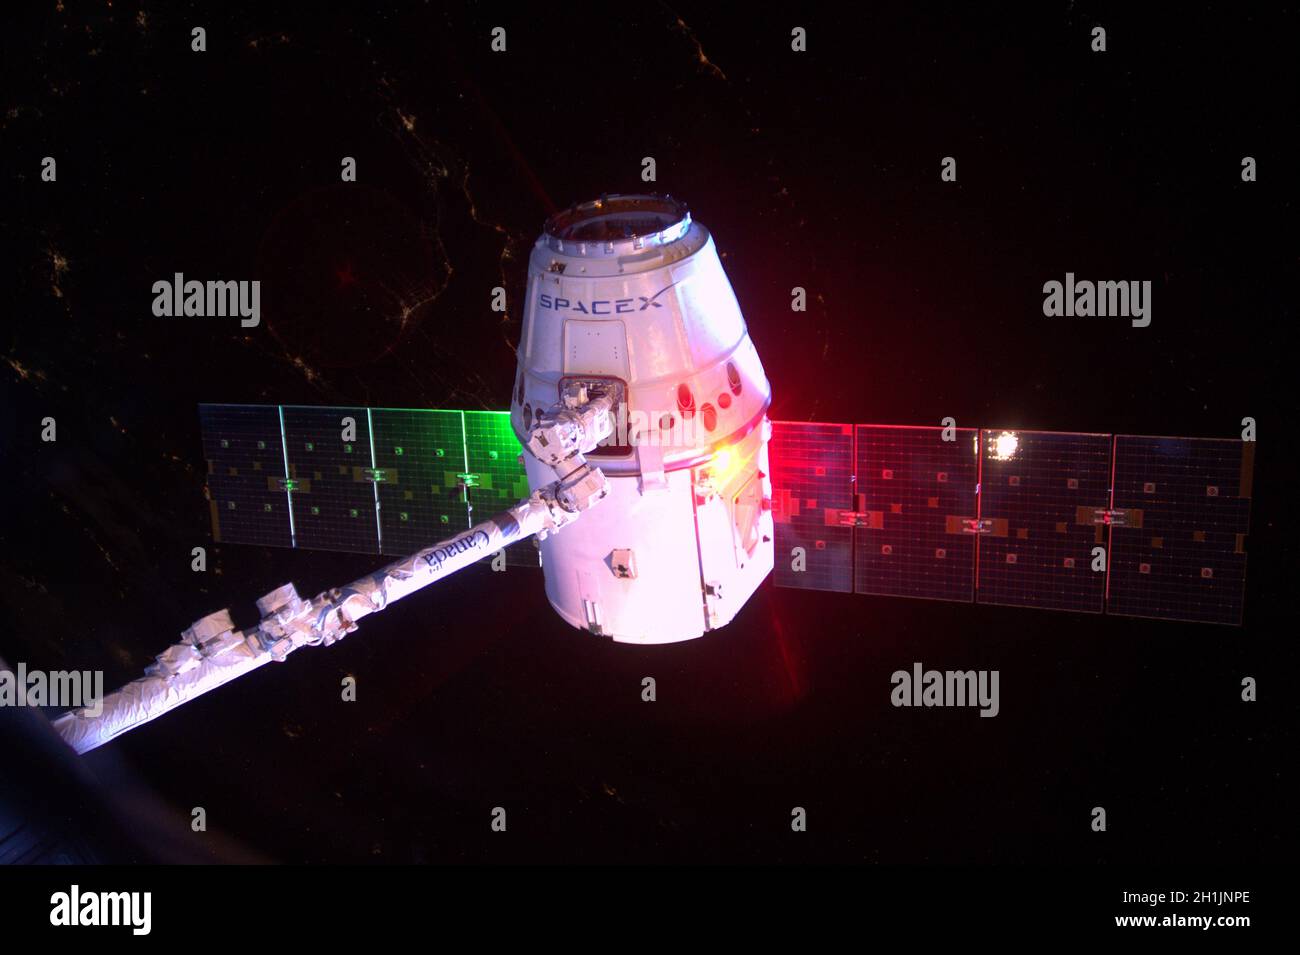 Une vue de la Station spatiale internationale : le module Dragon de Space X quitte la Station spatiale internationale, ramenant des échantillons scientifiques sur terre.Version optimisée et numériquement améliorée d'une image NASA/ESA.Crédit obligatoire: NASA/ESA/T.Pesquet.NB: Restrictions d'utilisation: Ne pas présenter comme endossement. Banque D'Images